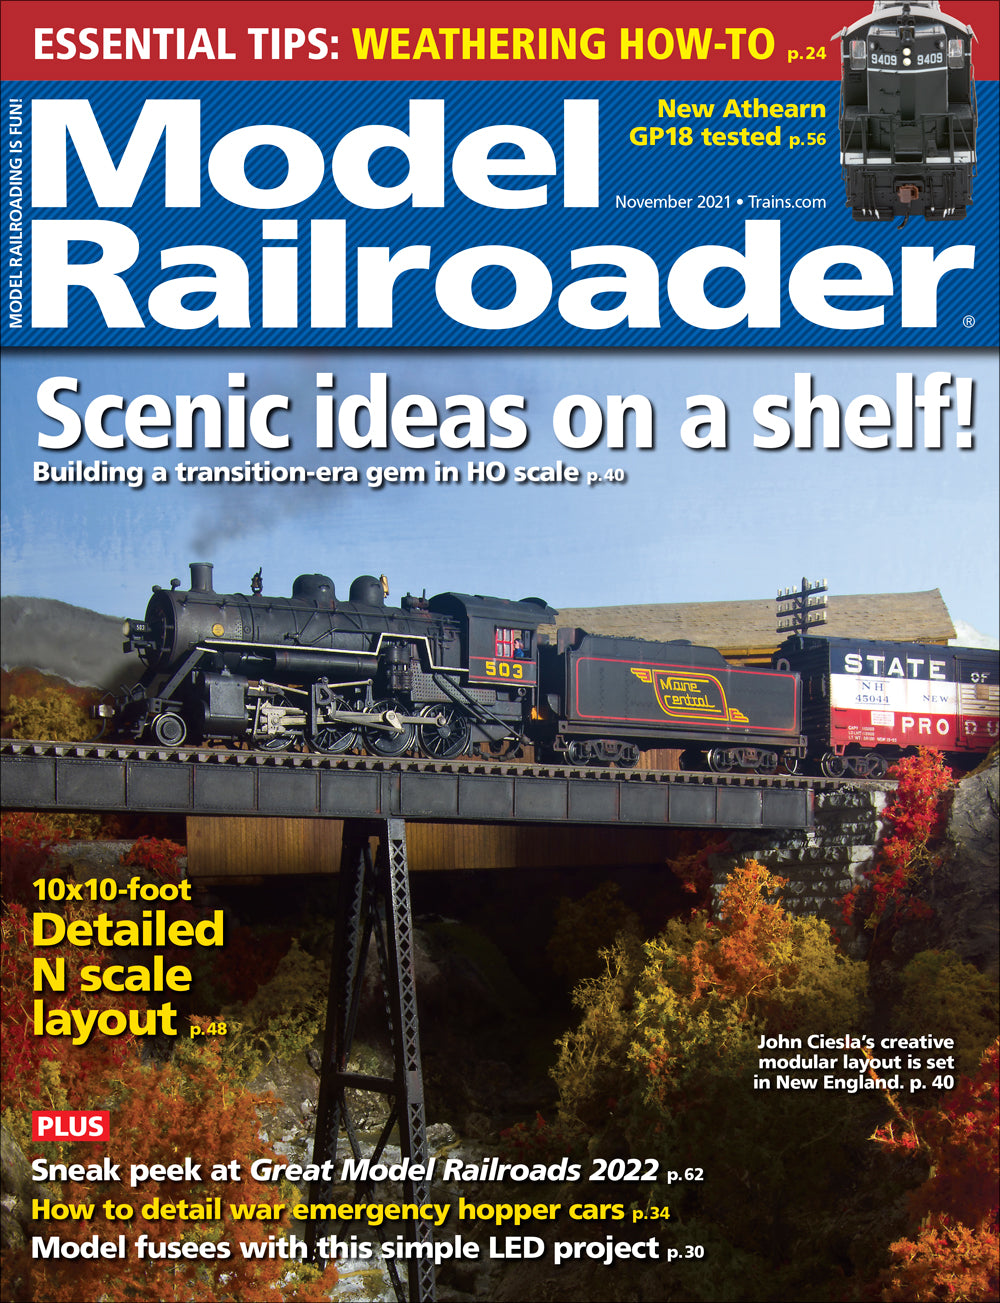 Model Railroader - Magazine - Vol. 88 - Issue 11 - November 2021